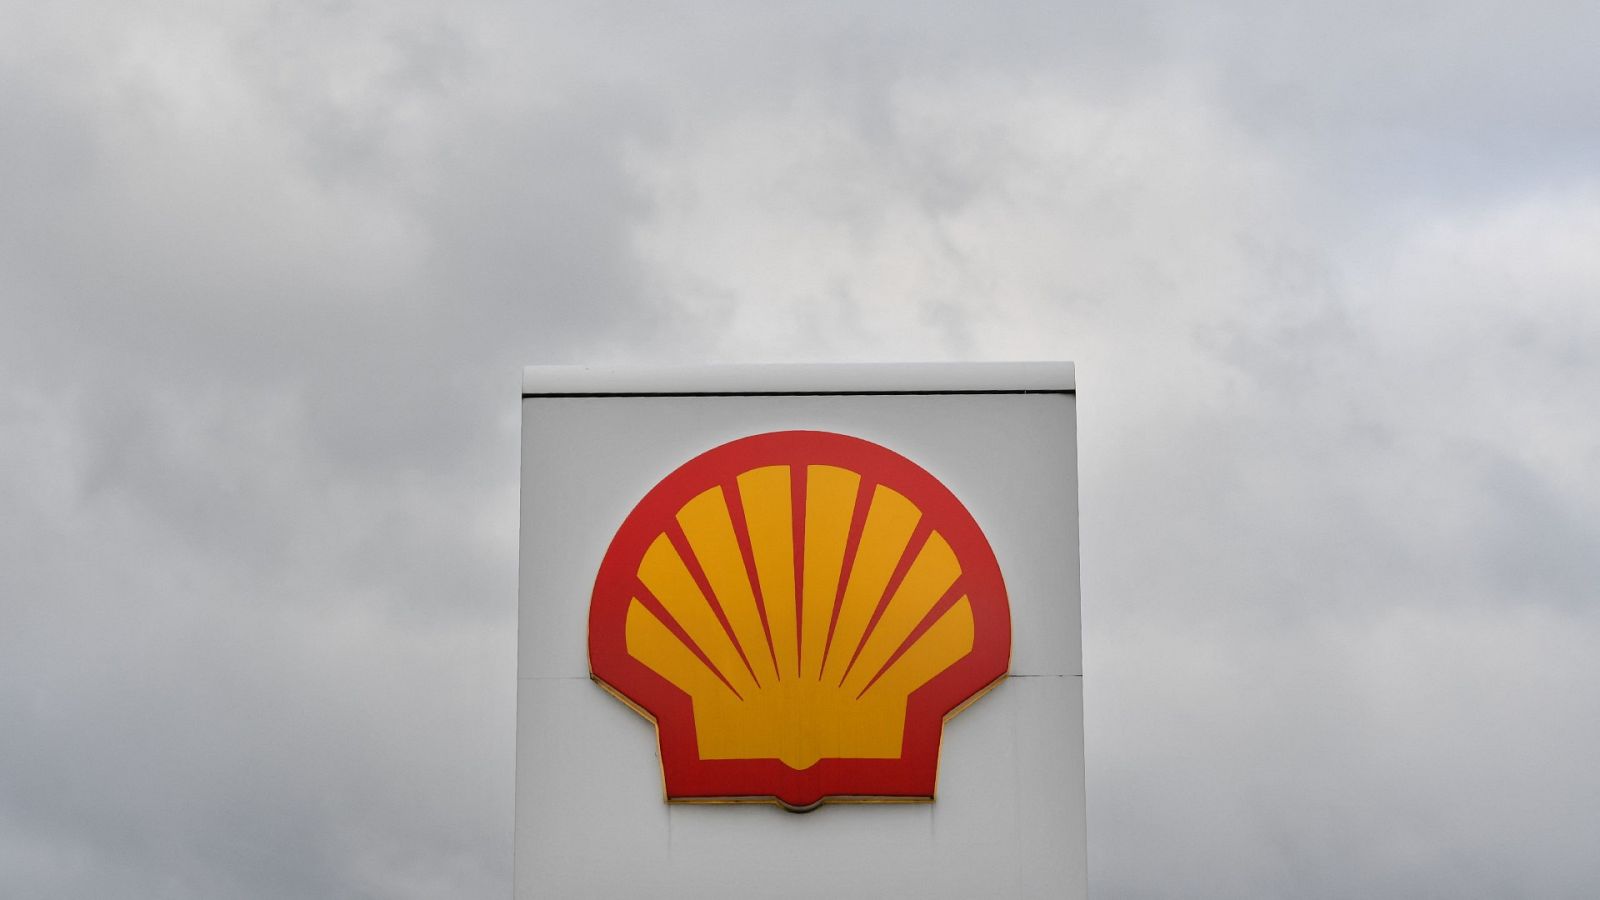 Sentencia sin precedentes contra el cambio climático: la petrolera Shell obligada a recortar sus emisiones de CO2 en un 45%